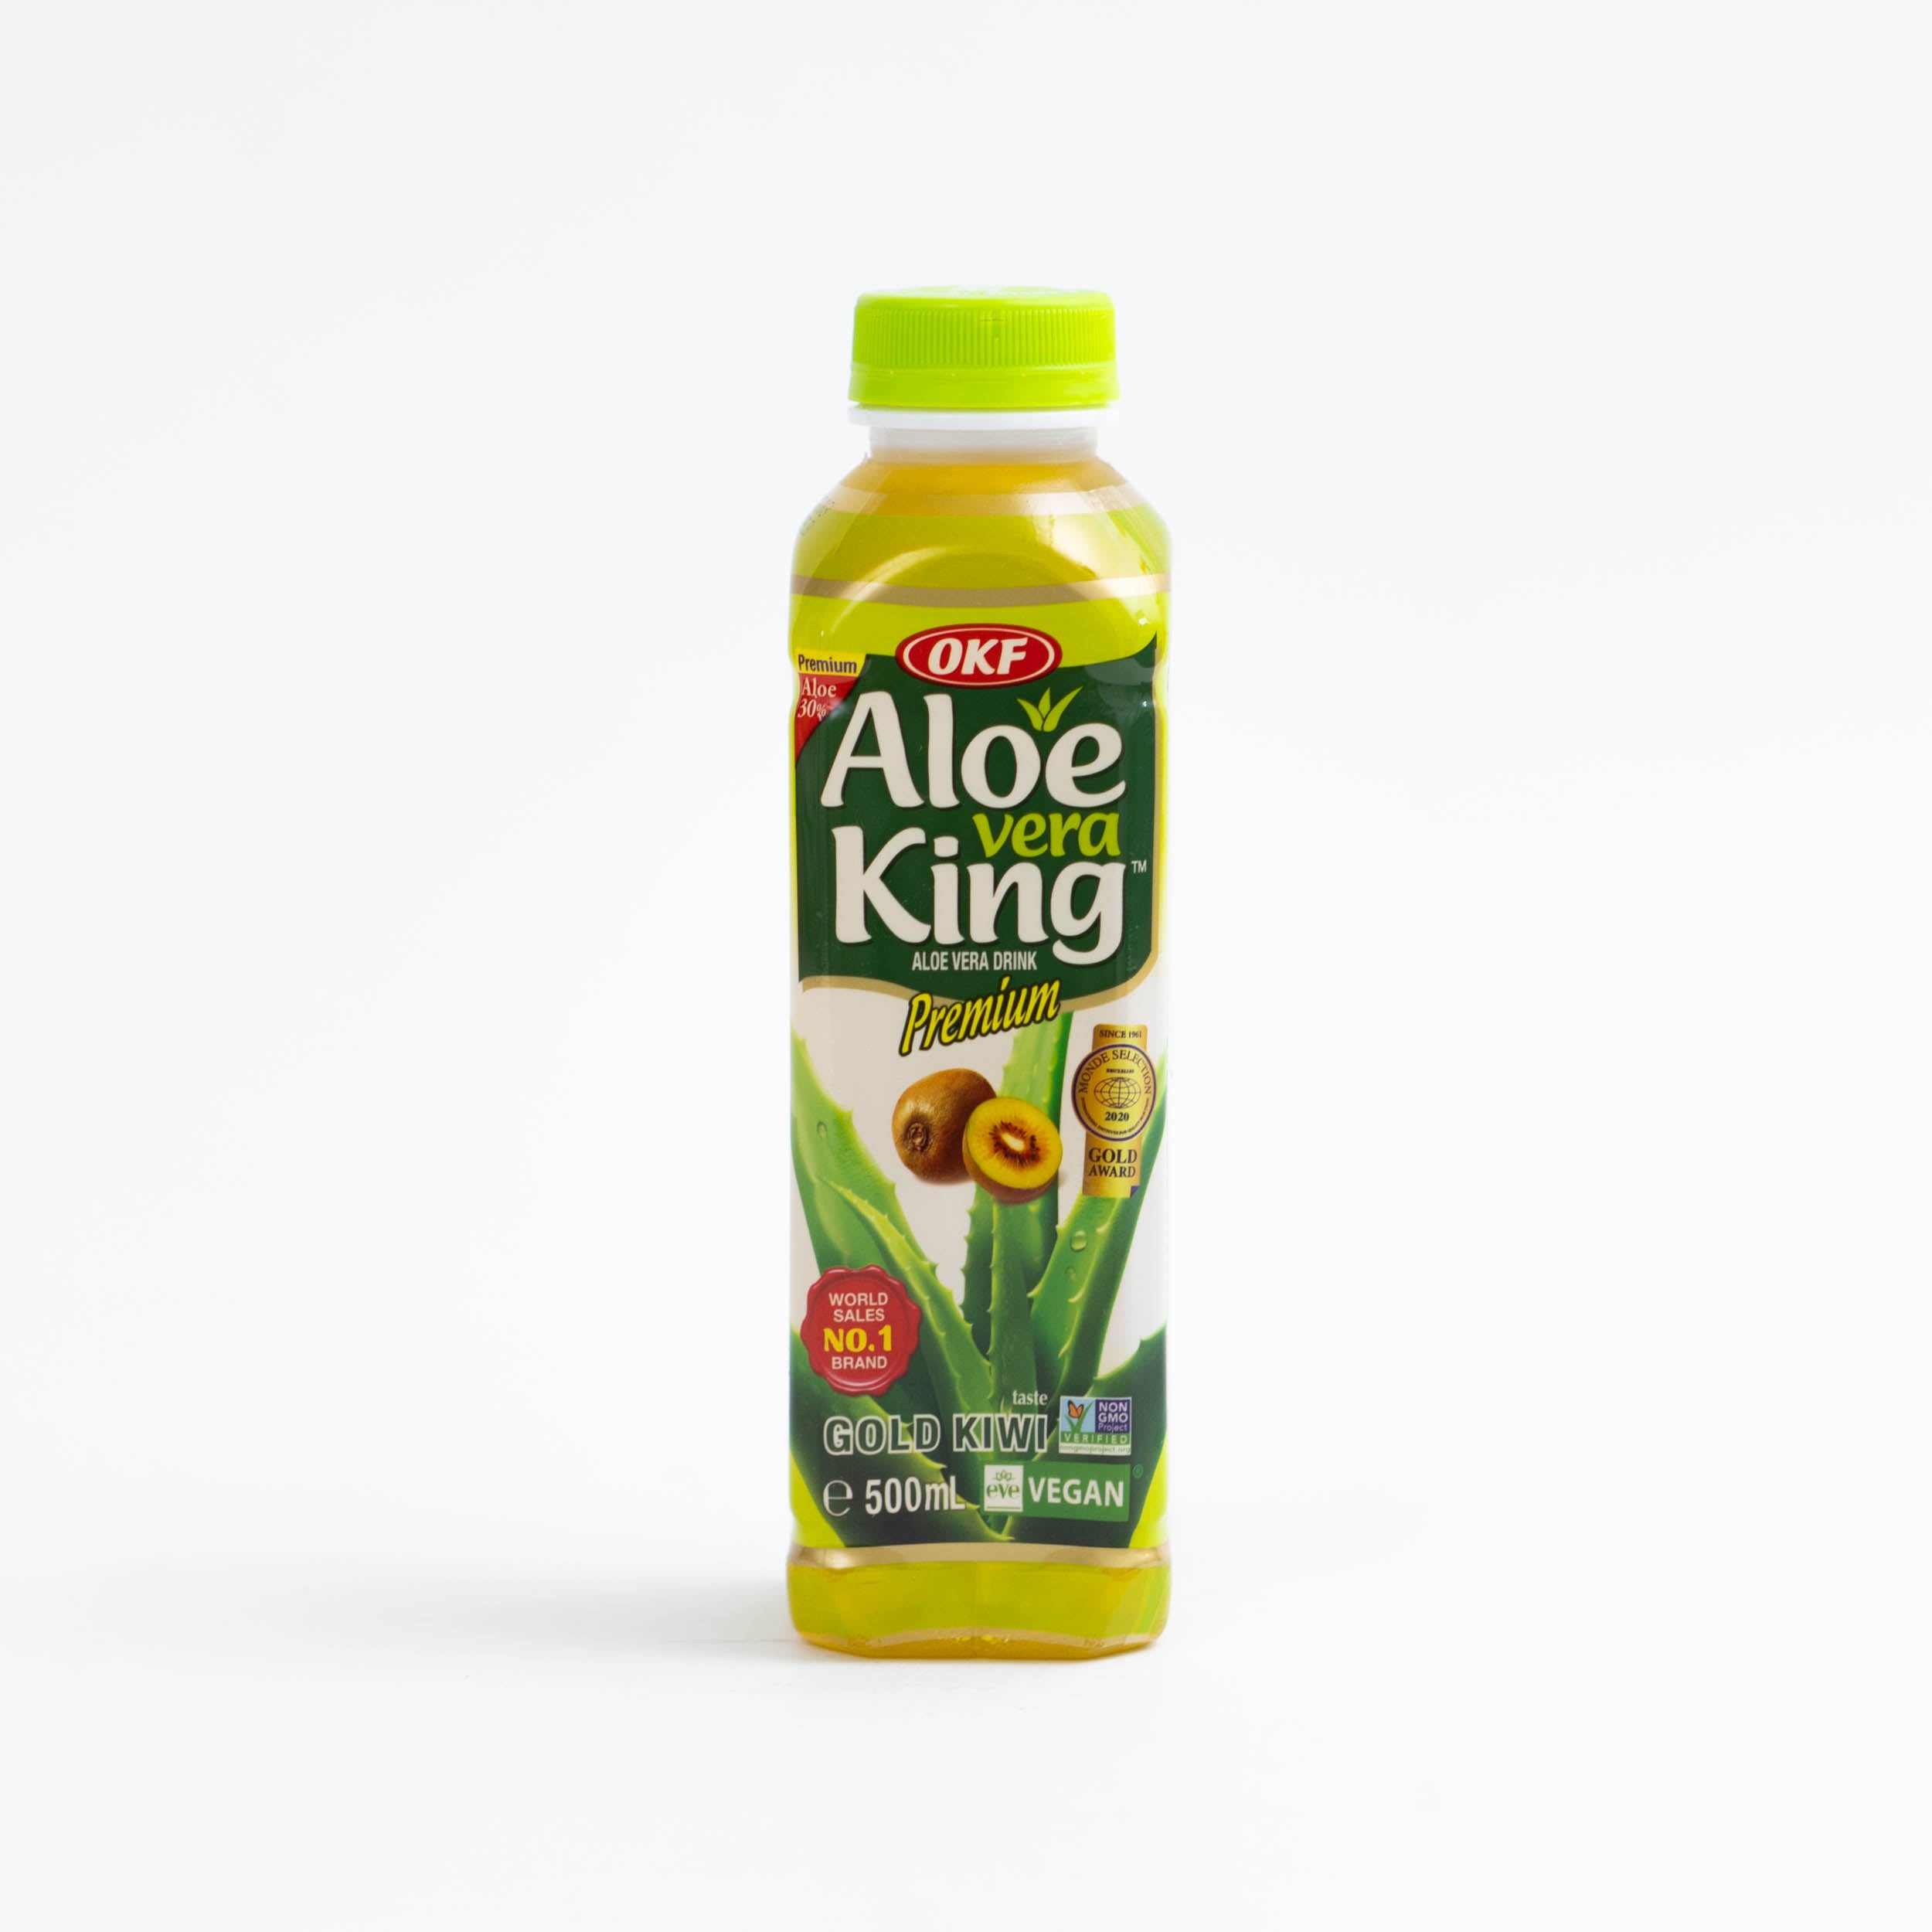 dinese.de asiashop gold kiwi aloe vera king asia shop onlineshop online asiatische getränke drink 